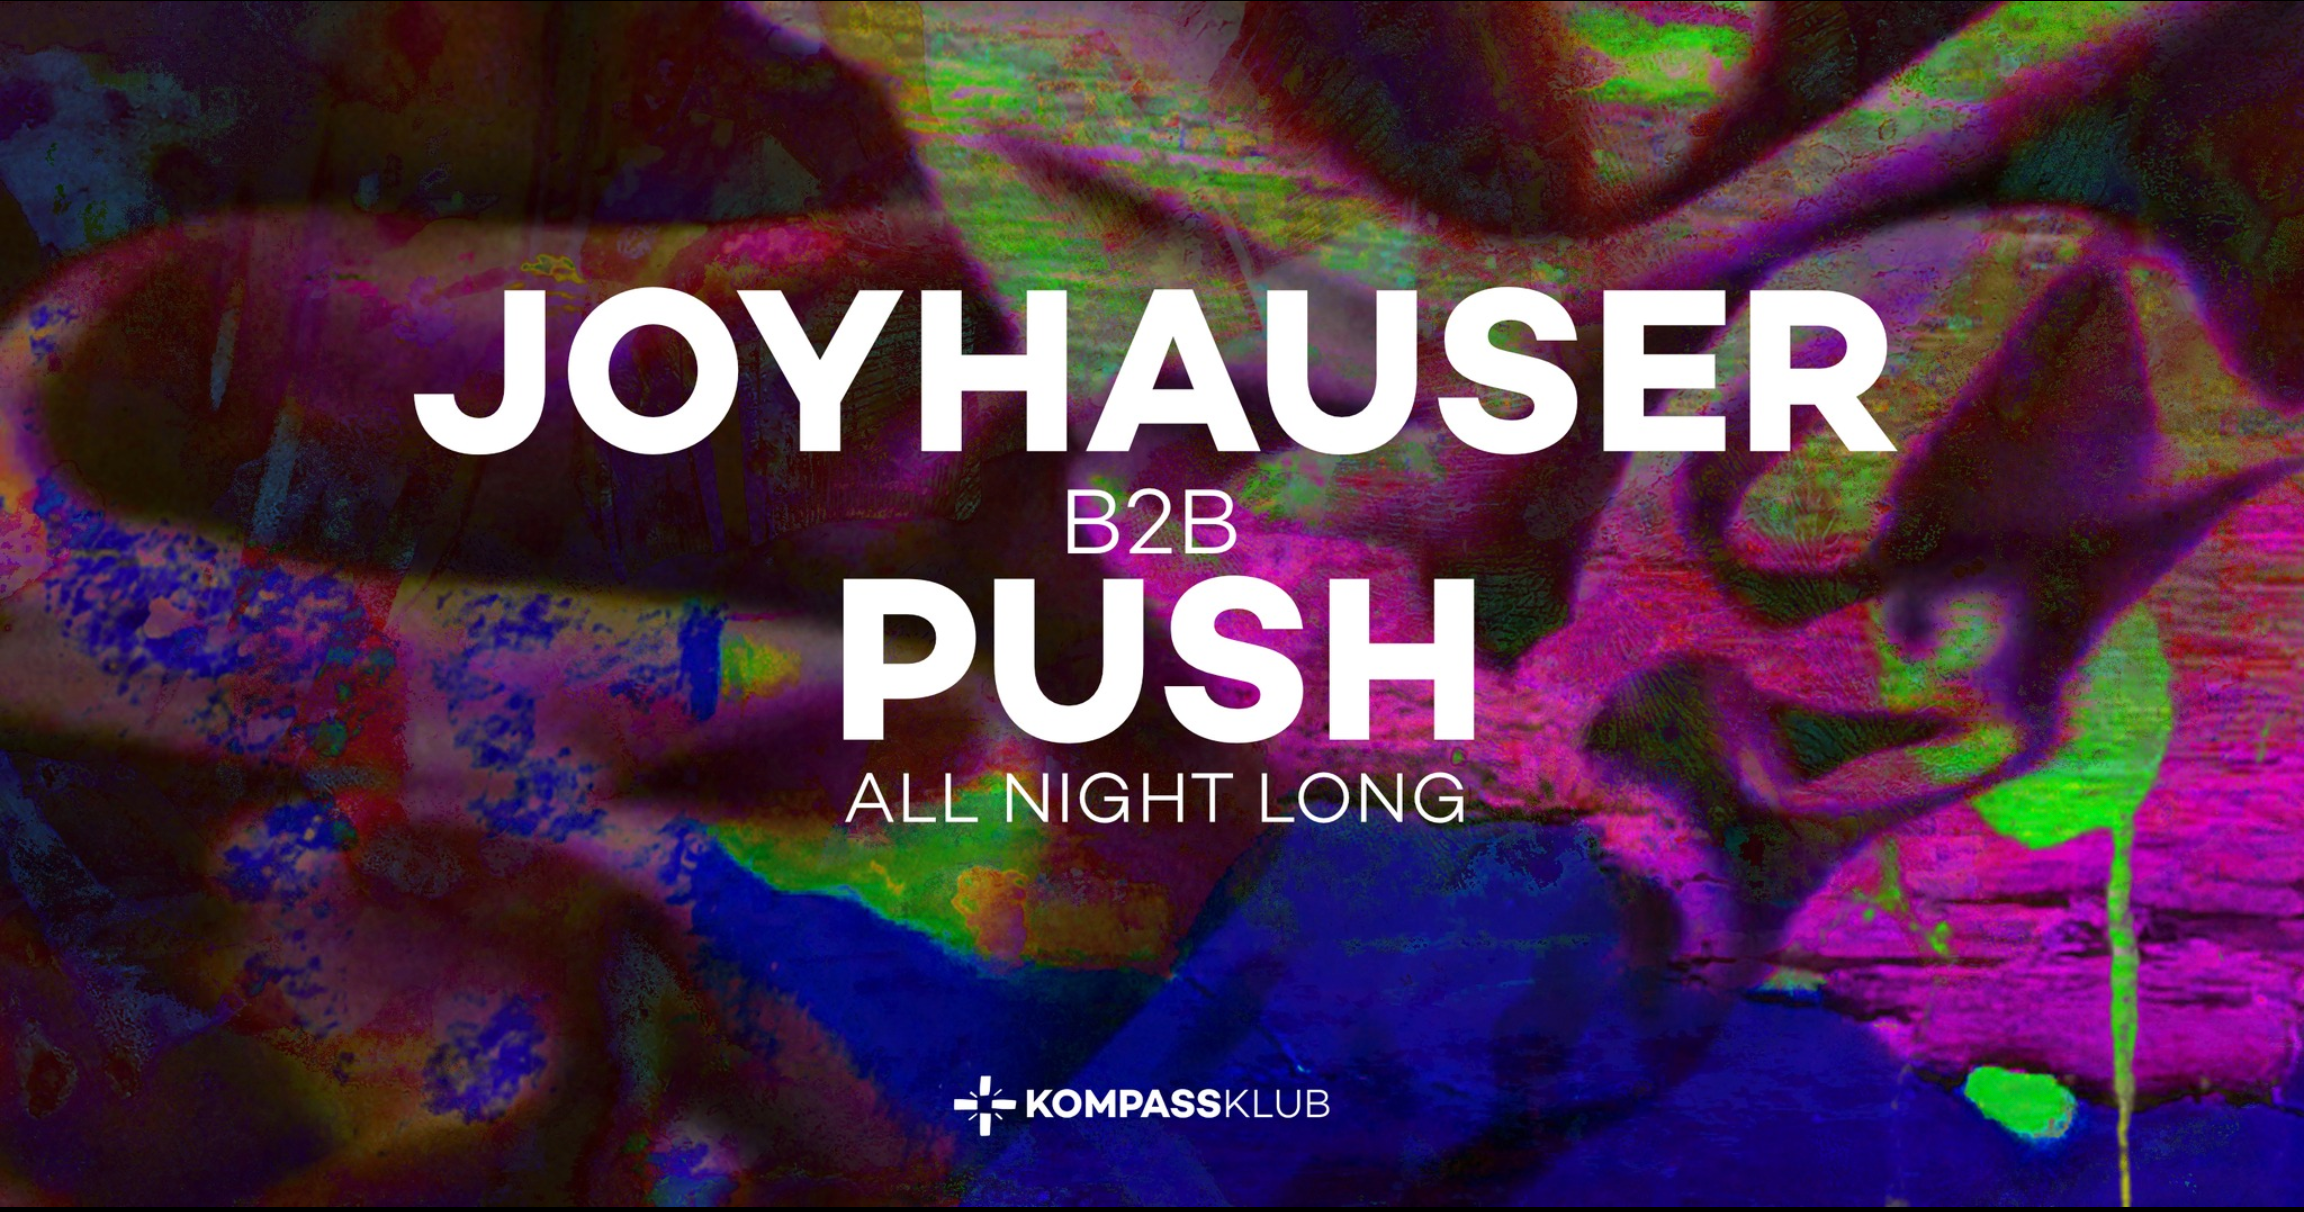 Joyhauser B2B Push ALL NIGHT LONG - フライヤー表